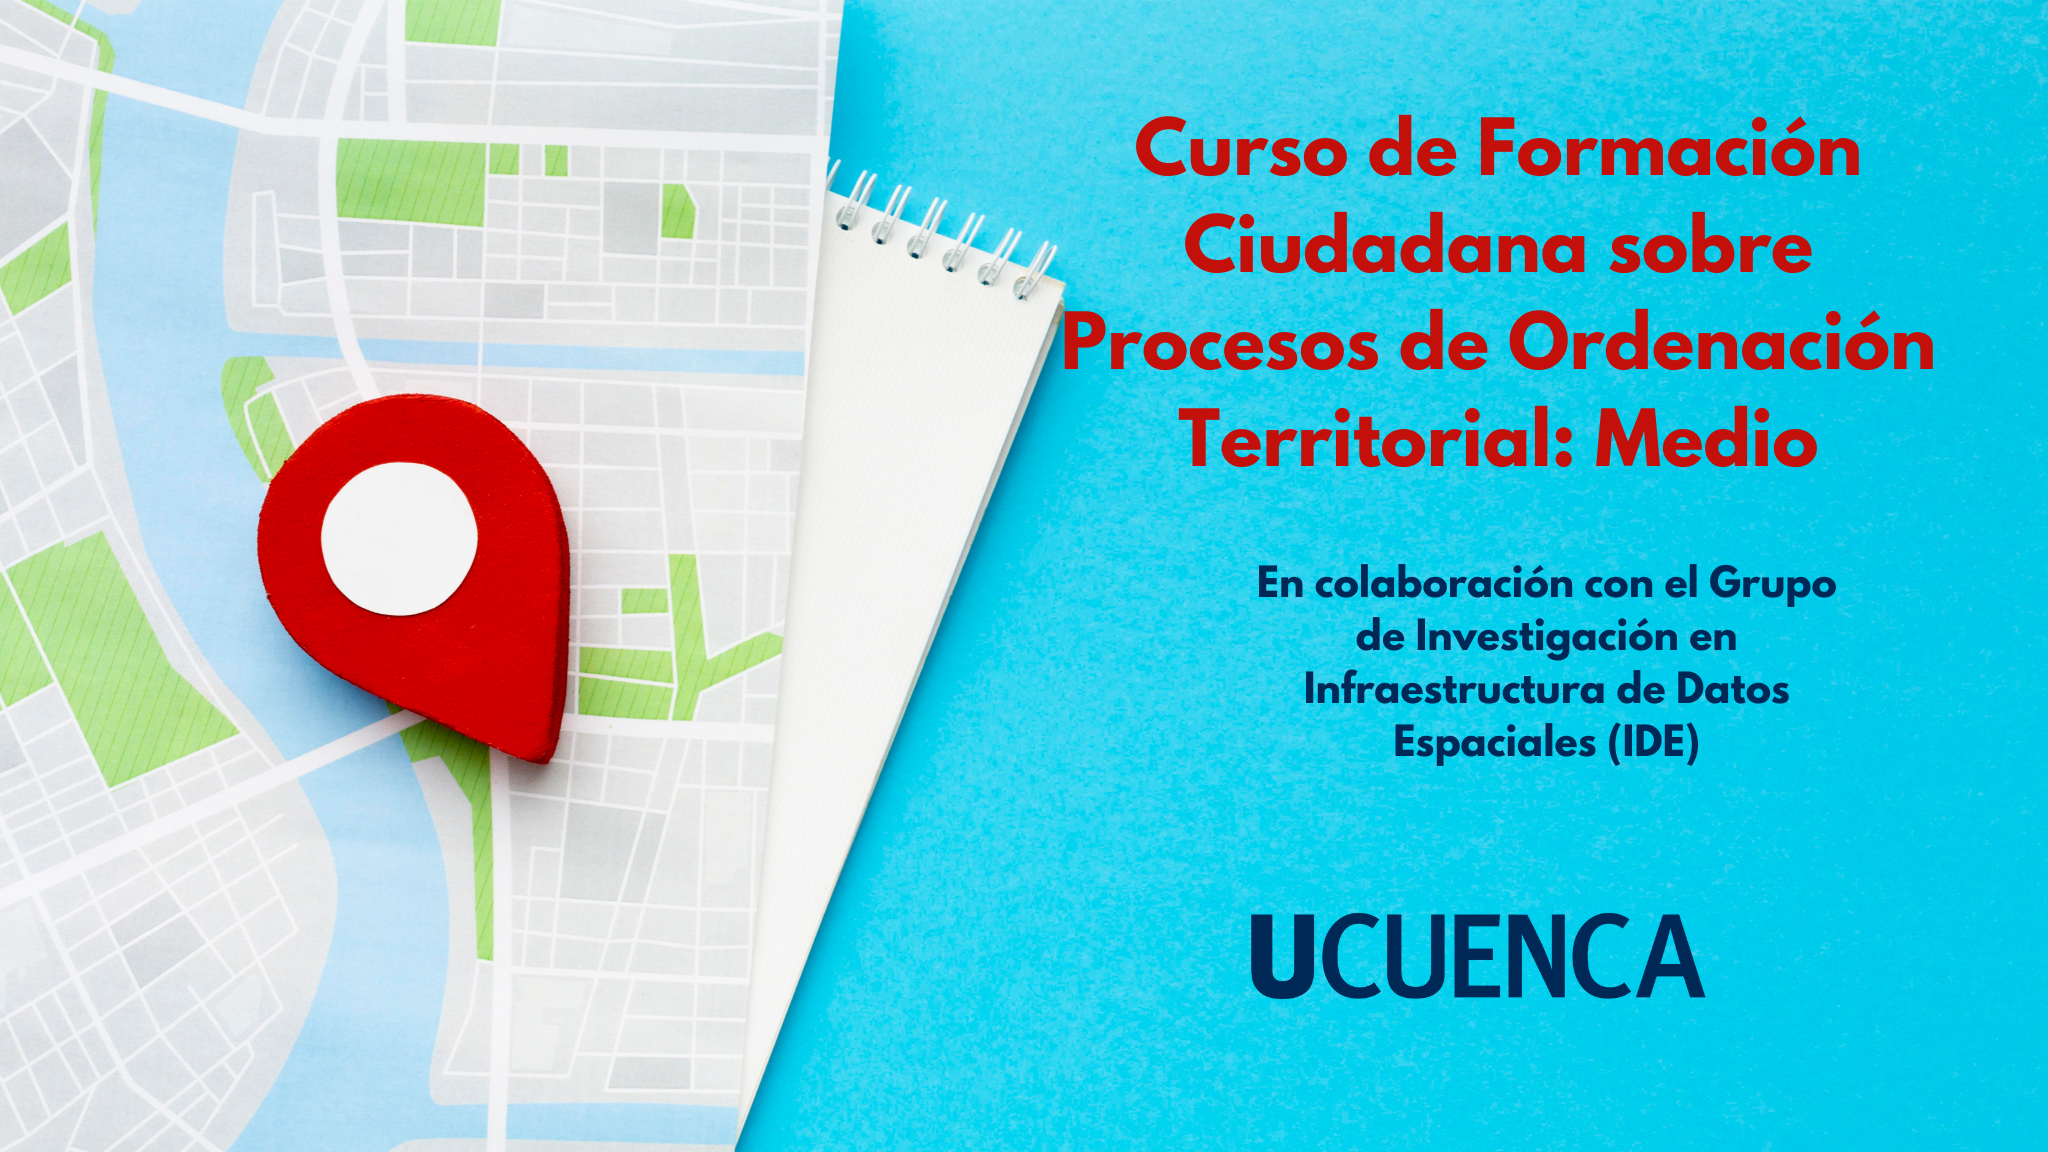 Curso de formación ciudadana sobre Procesos de Ordenación Territorial: Medio UC-BD-004